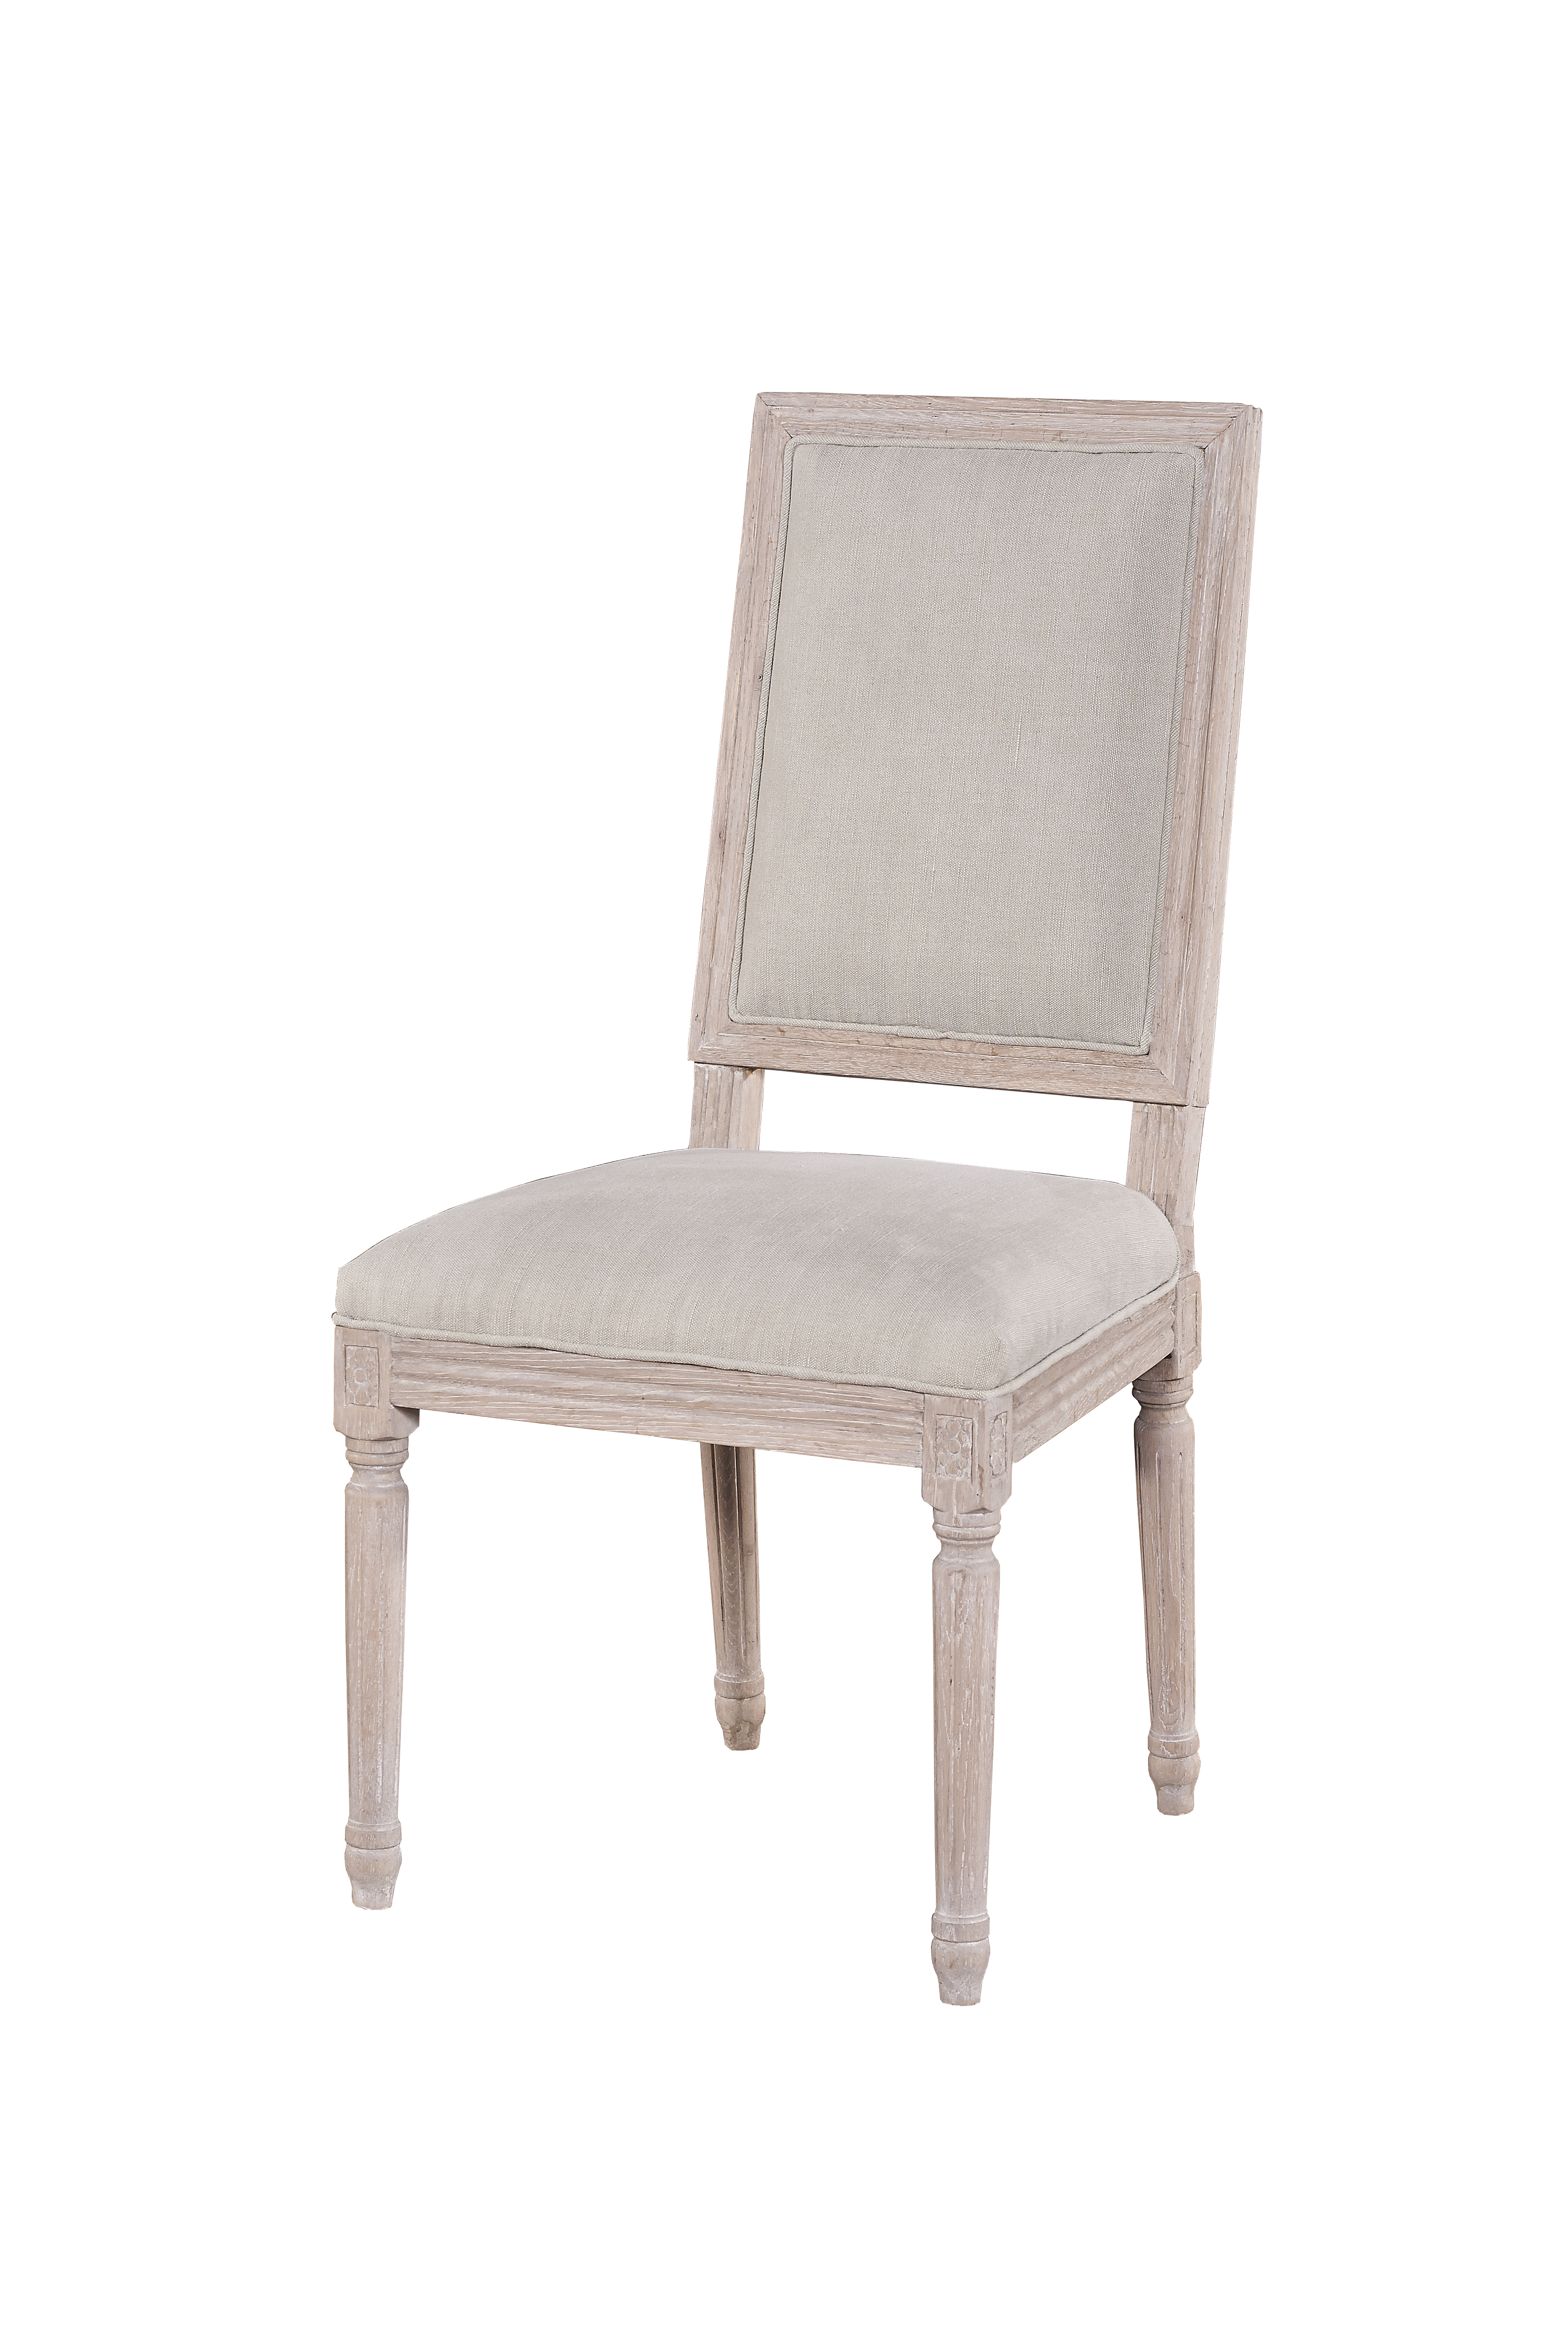 MD04-66-Oak Veneer Chair